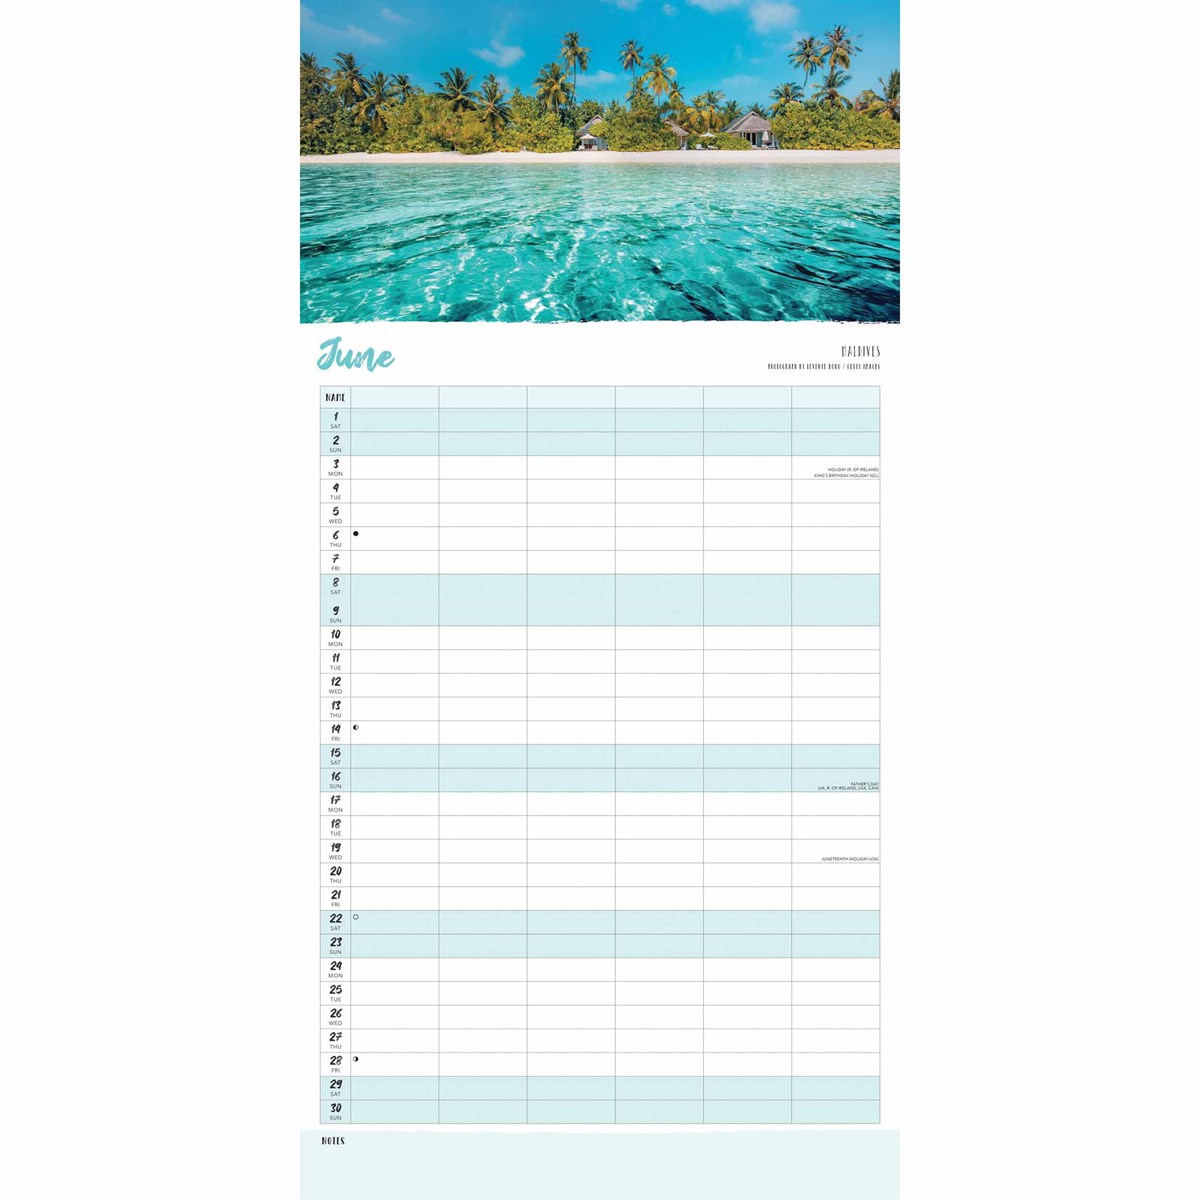 By The Sea Family Organiser 2024 Calendar